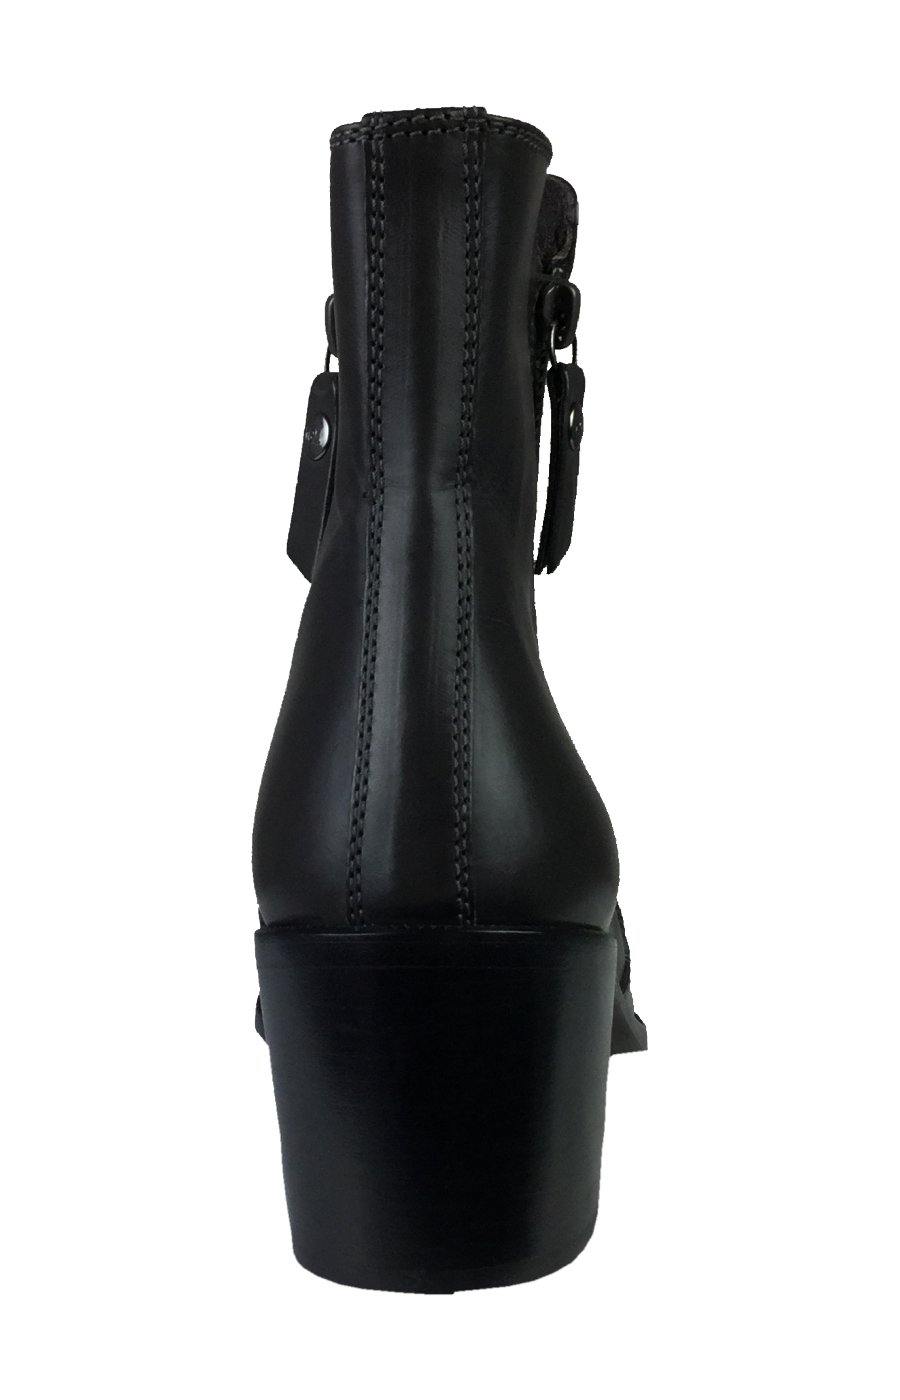 AGL Stiefelette in schwarz asphalt grau mit 6cm hohem Blockabsatz sale. Attilio Giusti Leombruni low boots mit seitlichen Reißverschluß und spitzem feminem Leisten in Größe 37 preisreduziert.